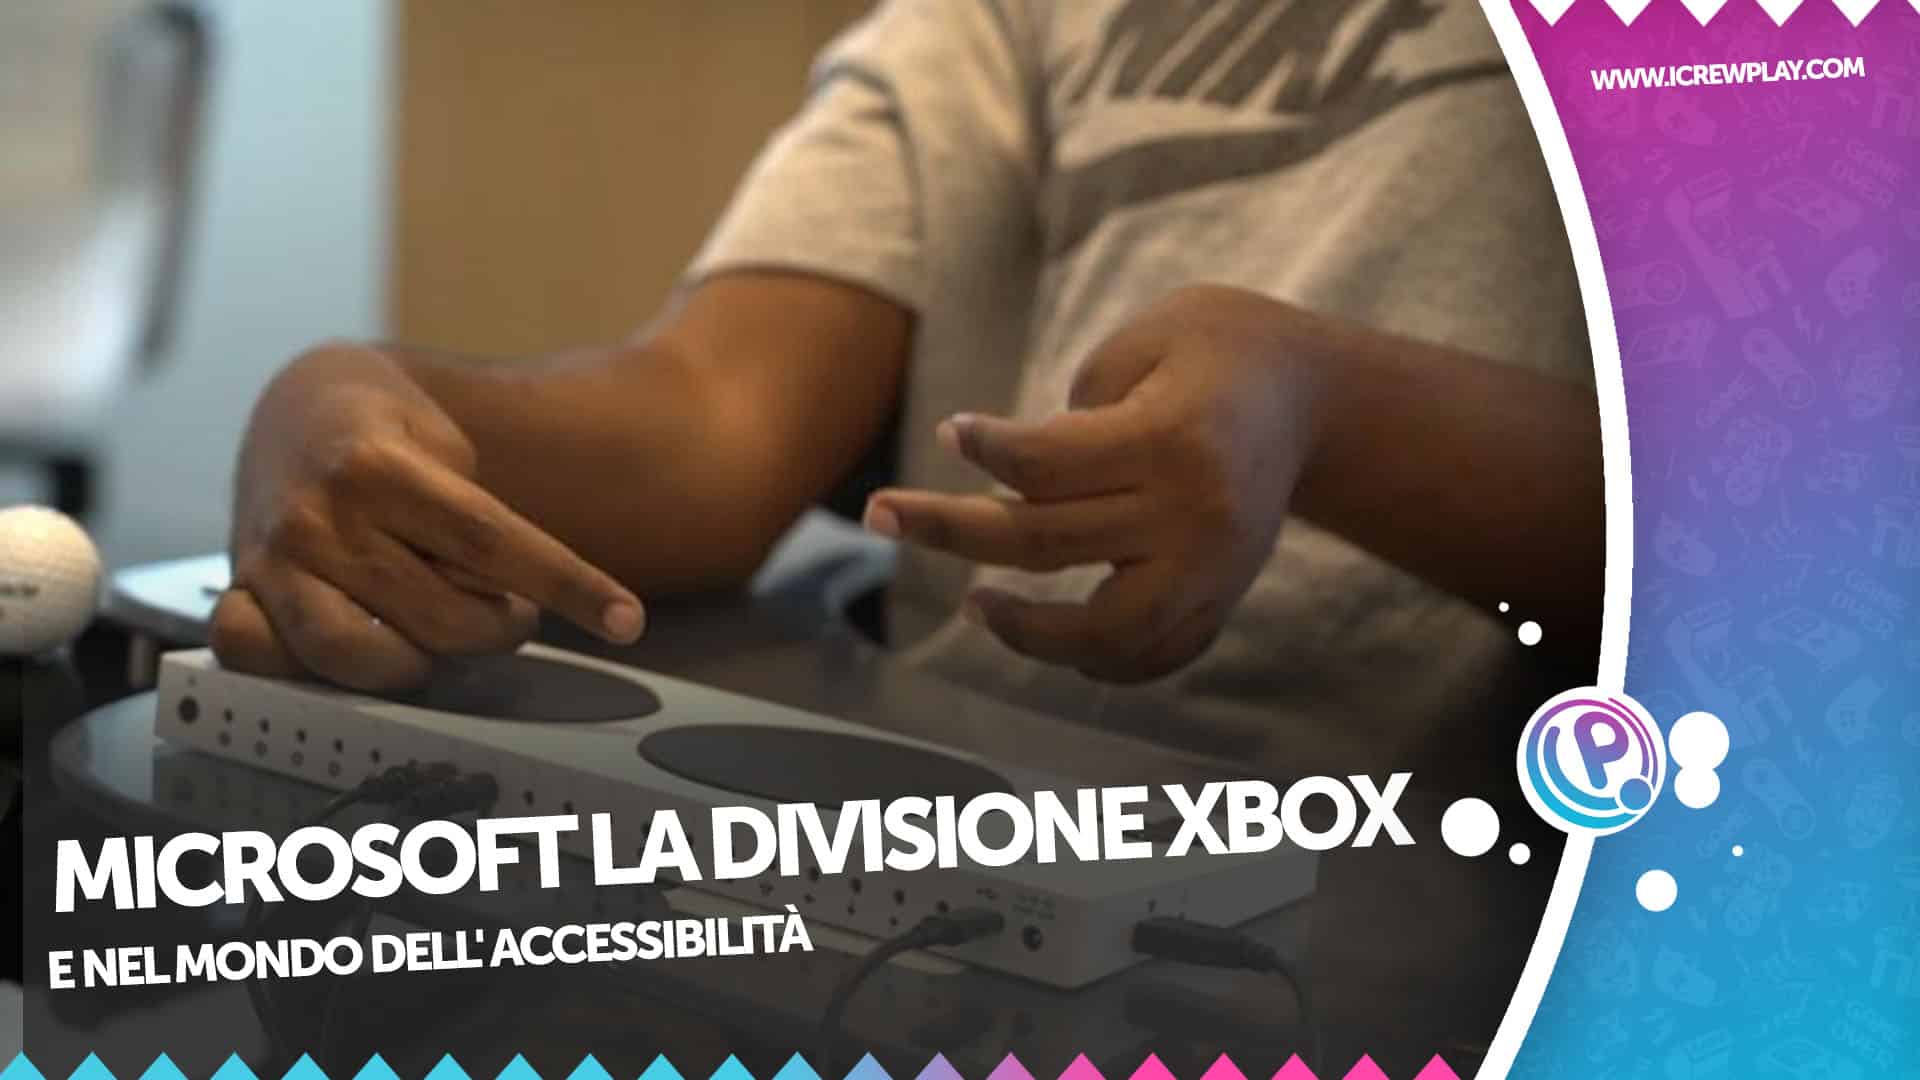 Microsoft: la divisione XBOX nel mondo dell'accessibilità 6